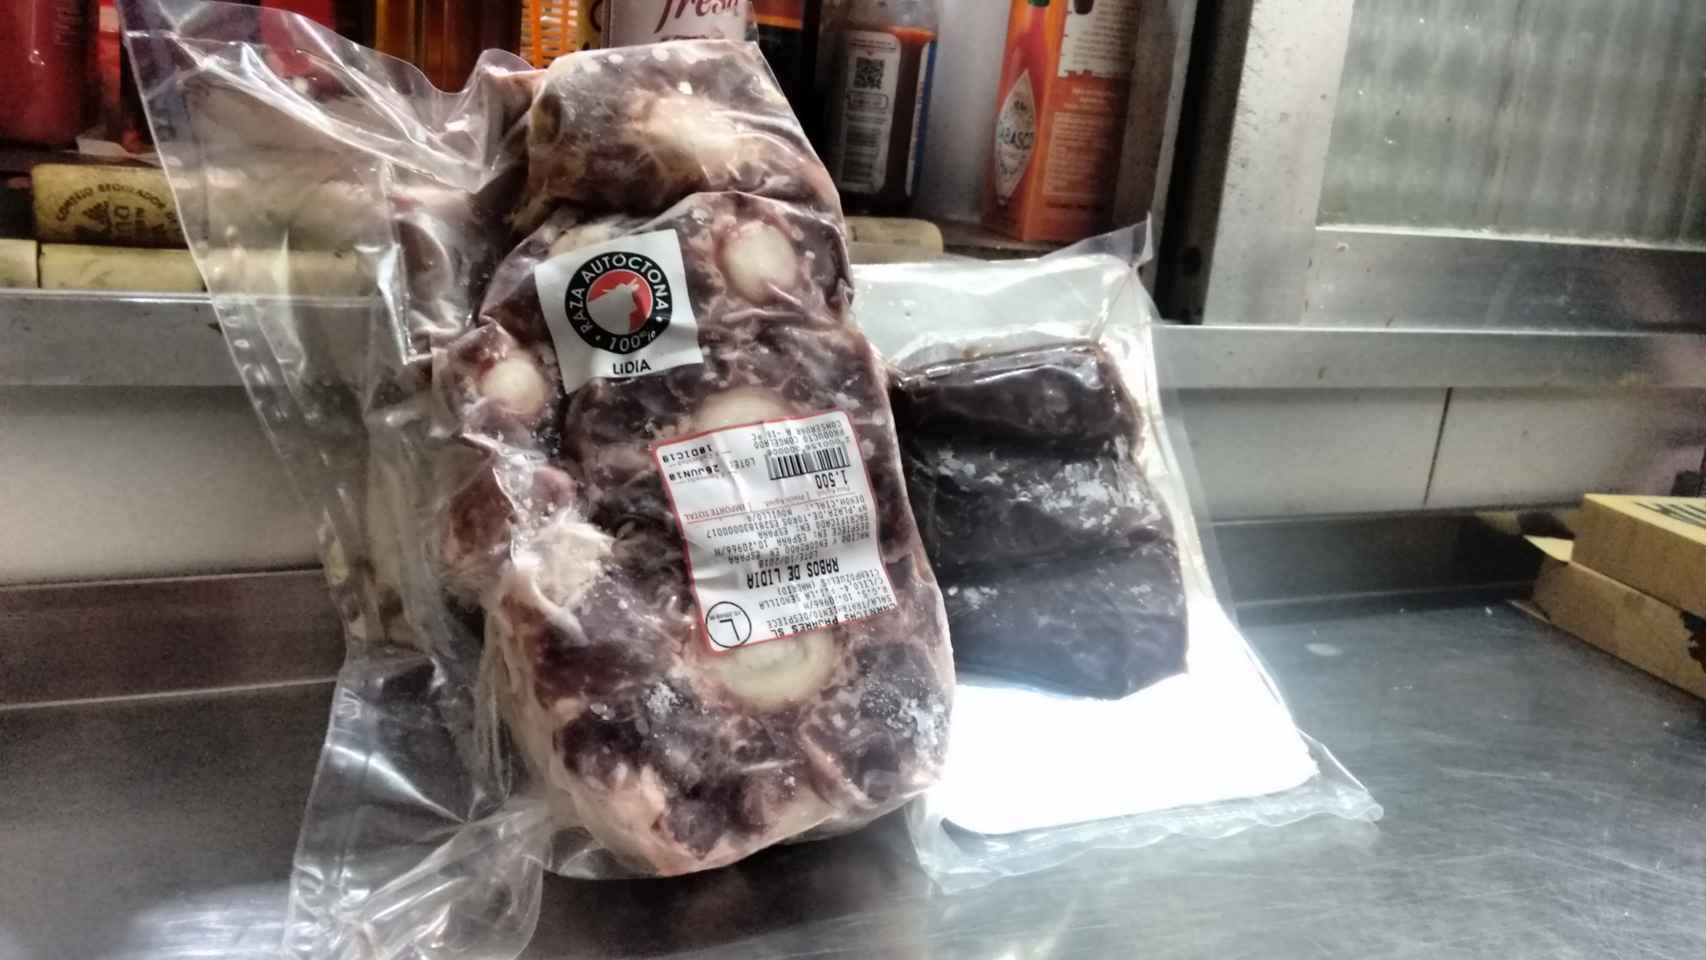 De izquierda a derecha: carne de rabo de toro y de canguro.